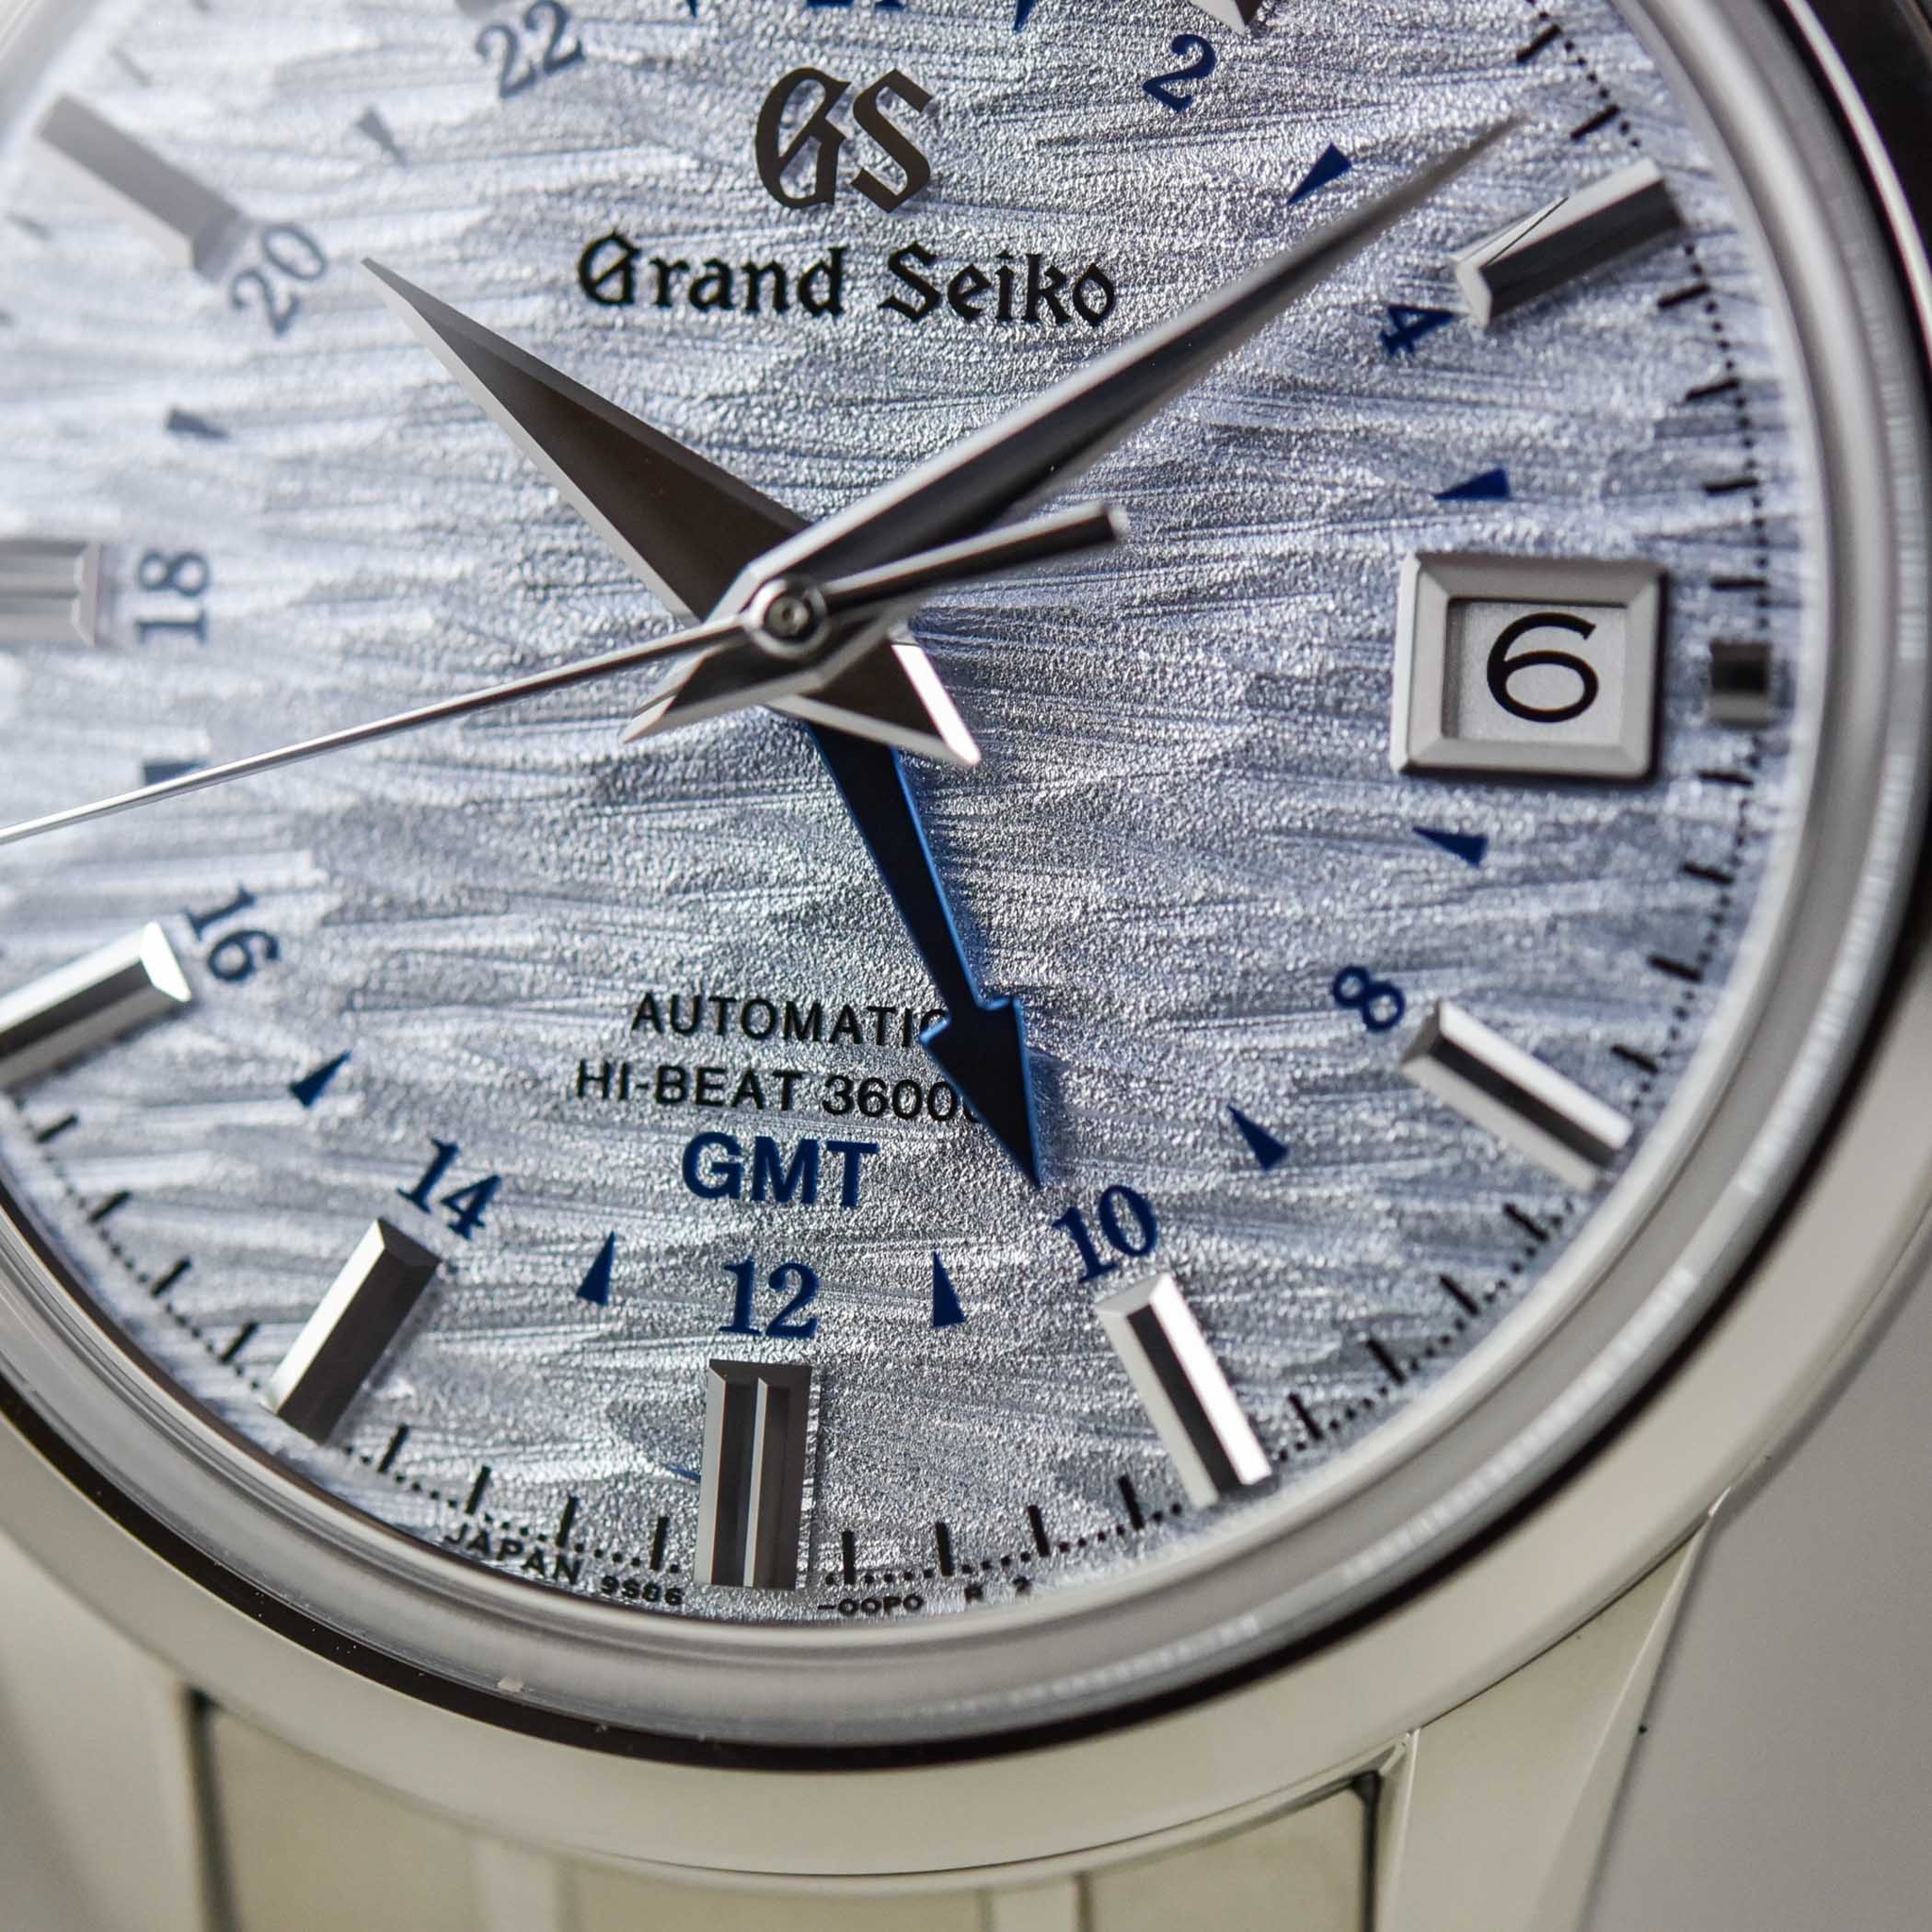 Grand Seiko và dòng đồng hồ 4 mùa Elegance GMT 4 Seasons Collection